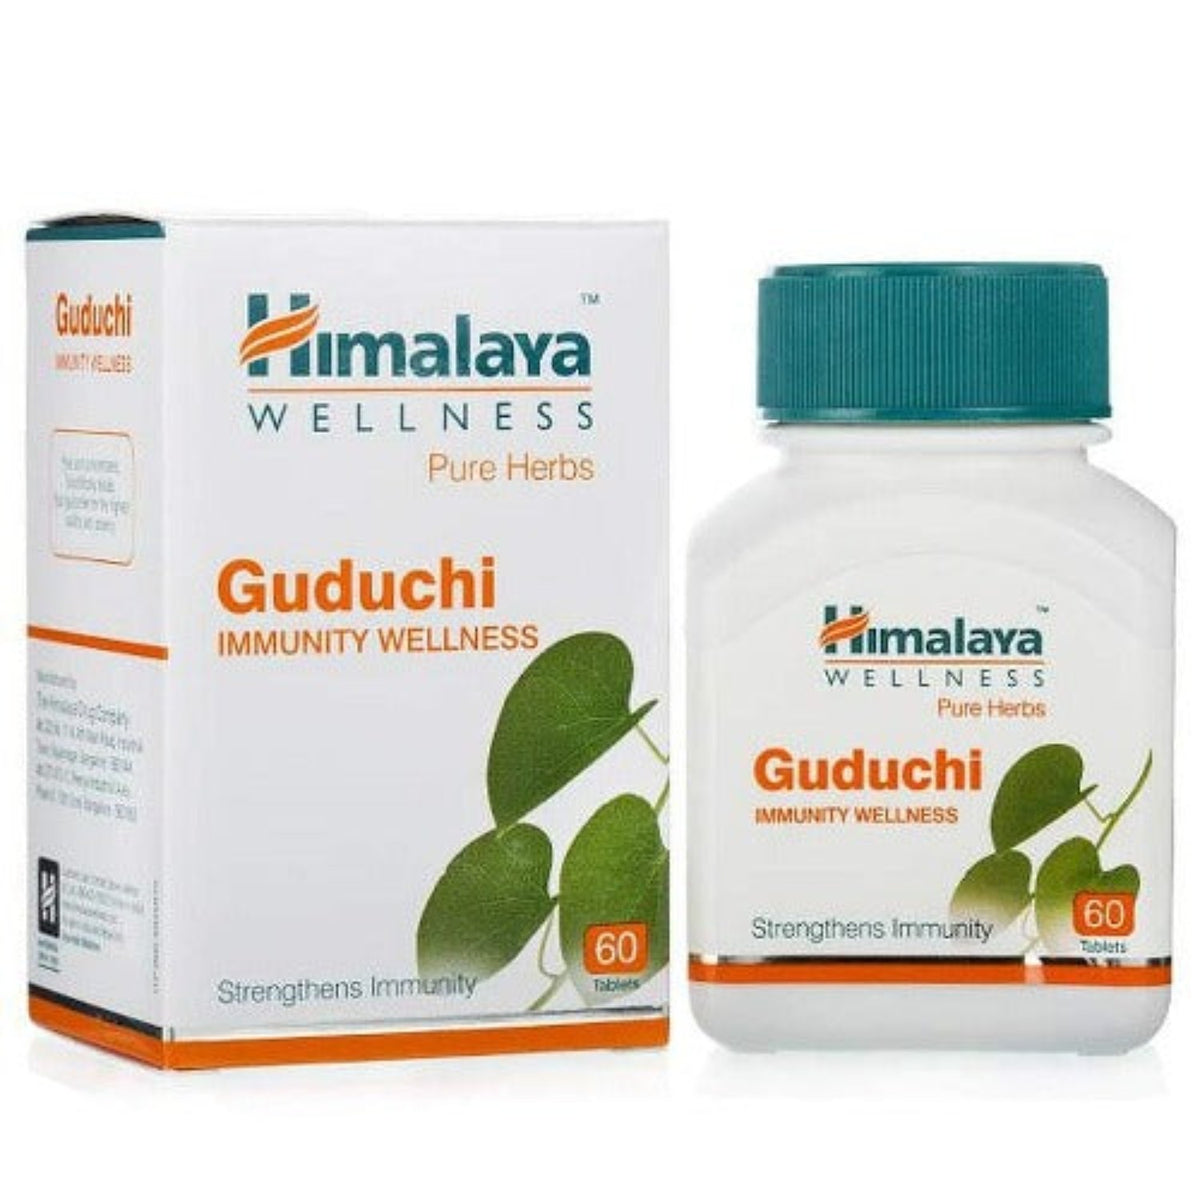 Himalaya Pure Herbs Immunity Wellness Травяной аюрведический препарат Гудучи укрепляет иммунитет 60 таблеток